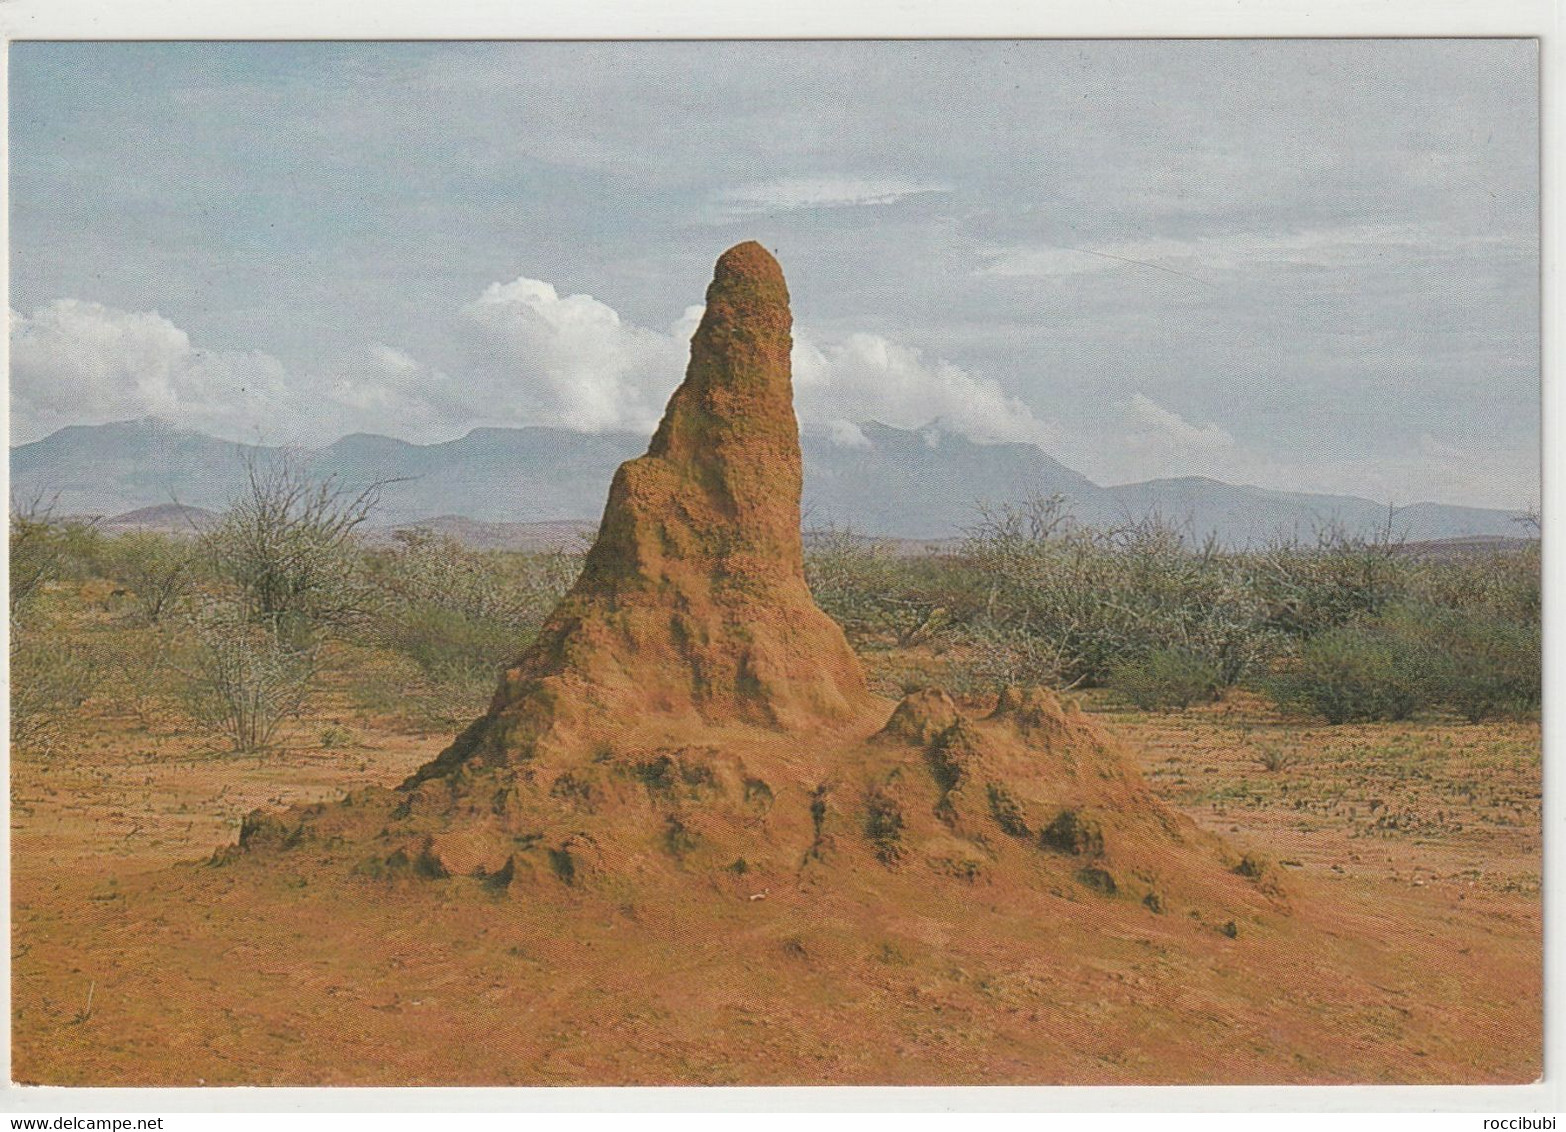 SWA, Termitenhügel - Namibie